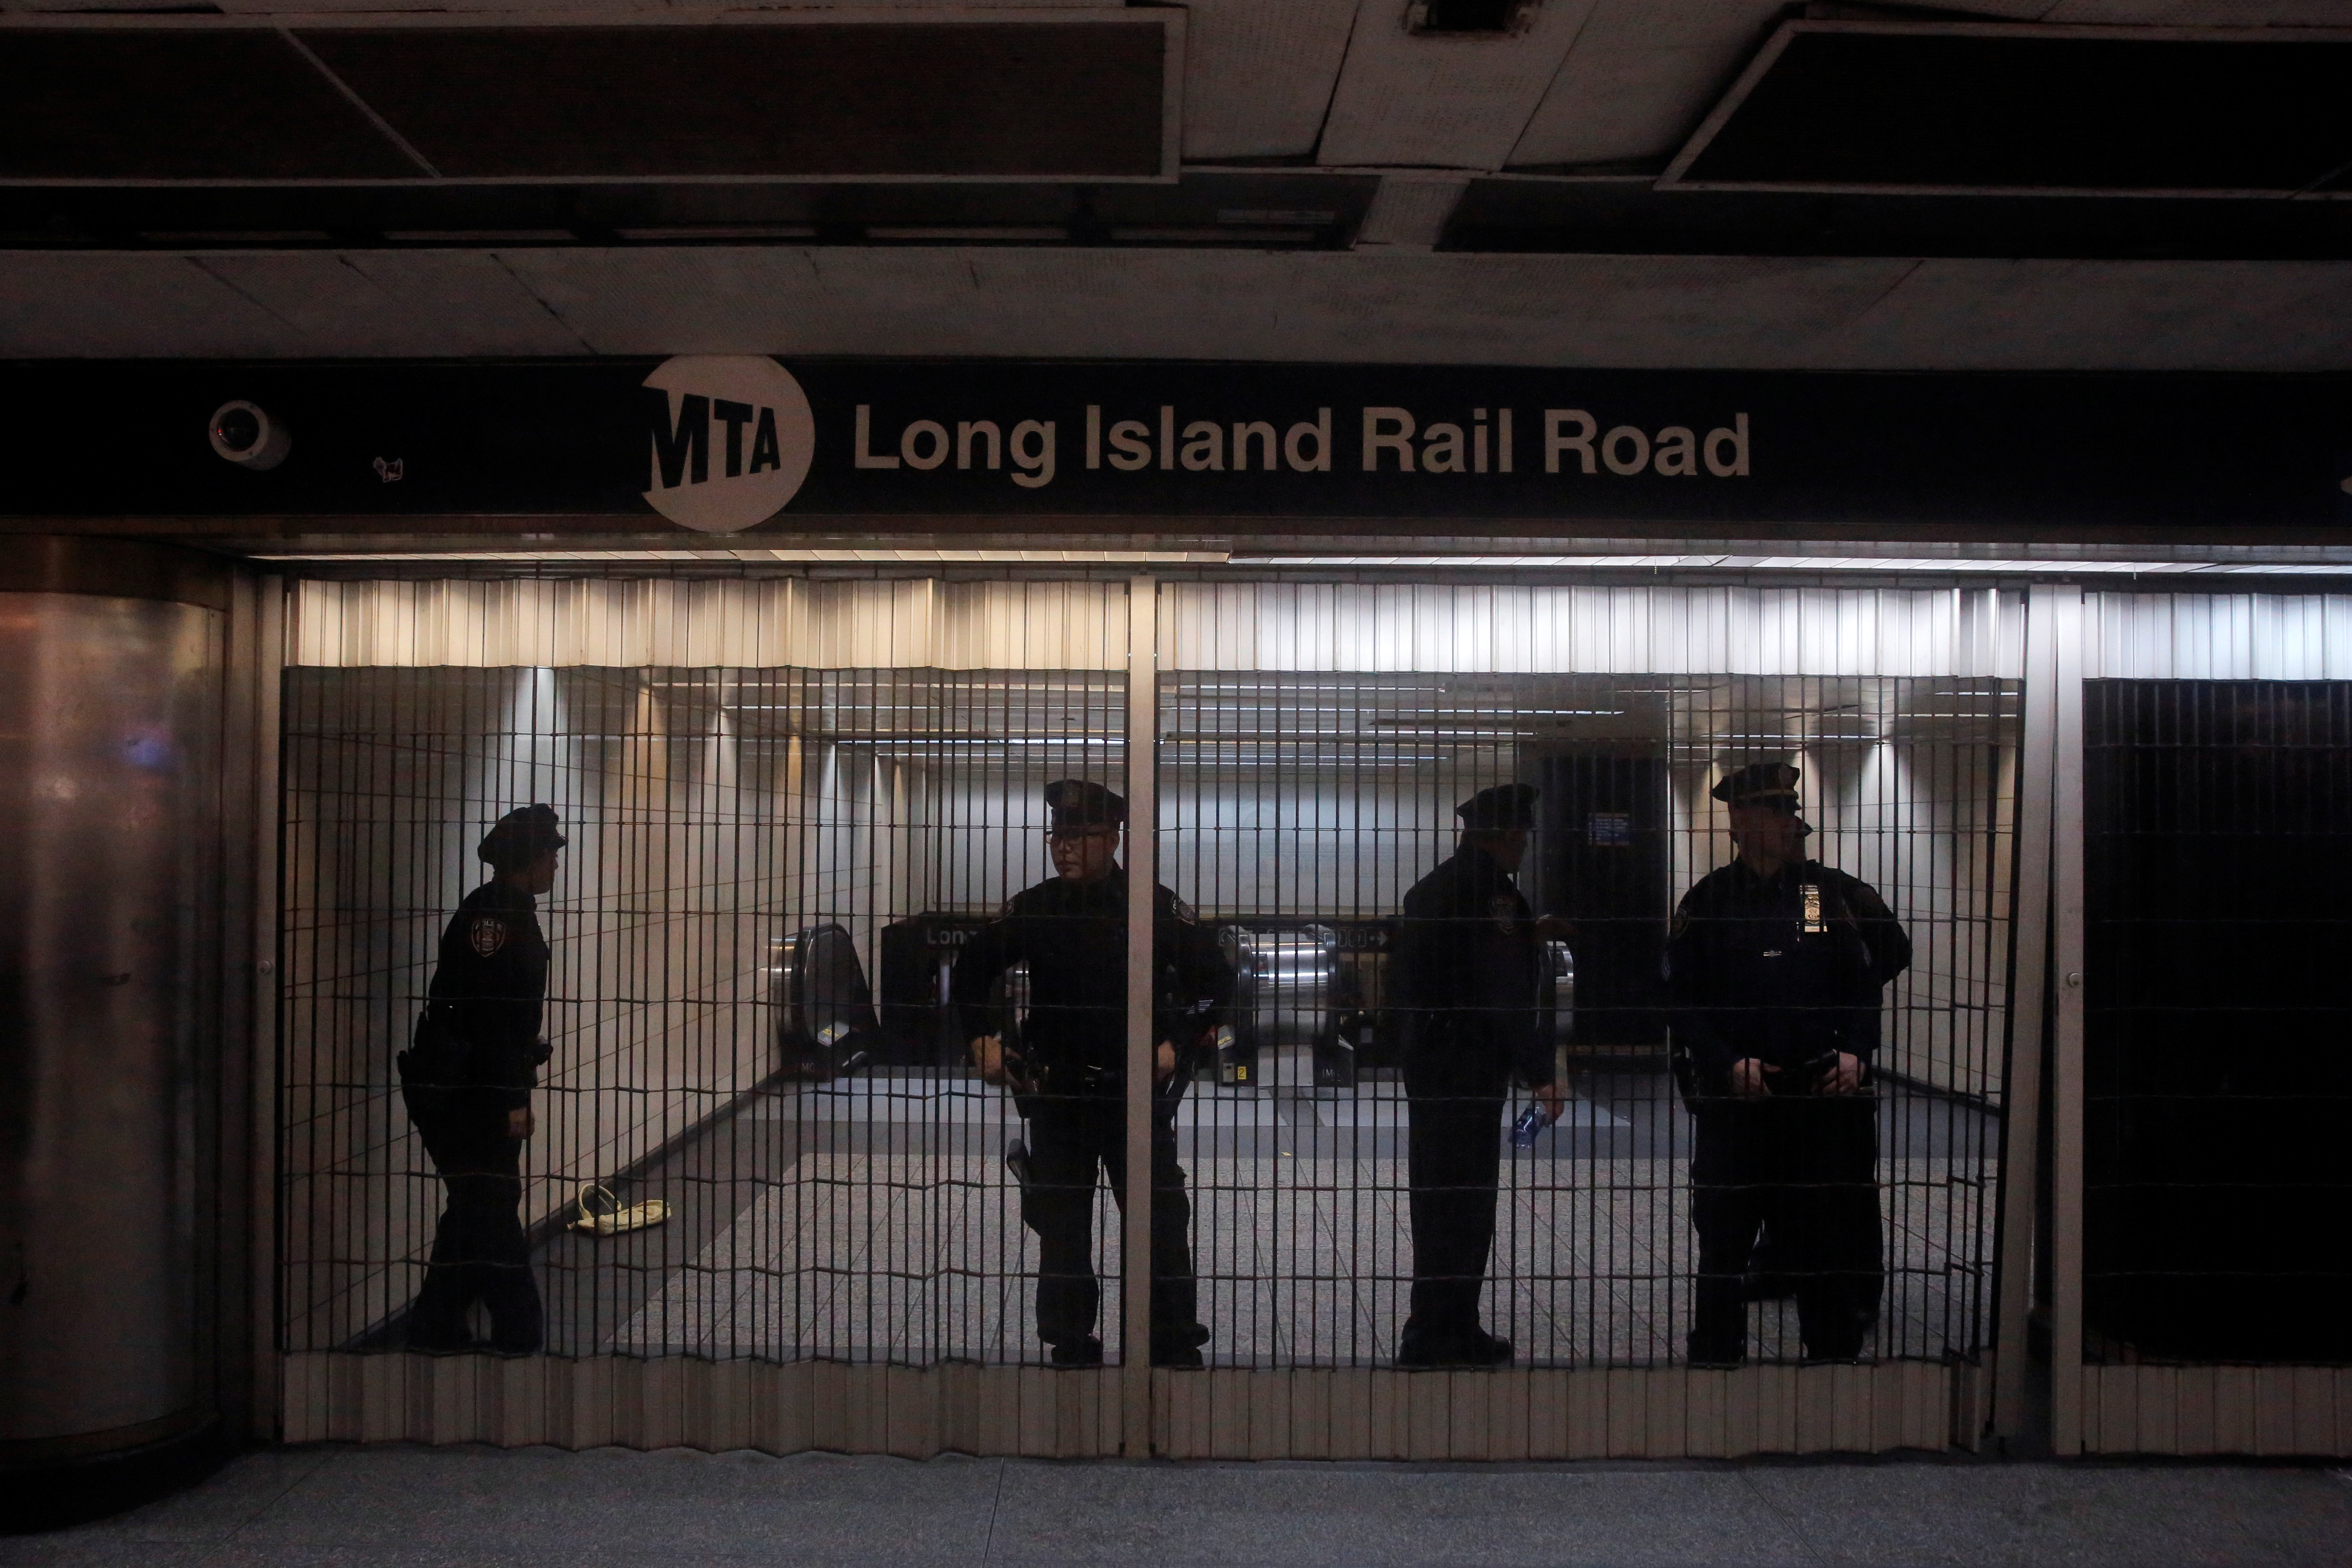 Μέλη της αστυνομίας της Μητροπολιτικής Αρχής Μεταφορών στέκονται πίσω από μια κλειστή είσοδο στο σταθμό Pennsylvania (Penn.) μετά από πολλαπλές καθυστερήσεις στη σιδηροδρομική υπηρεσία Long Island Rail Road κατά τη διάρκεια ενός χειμώνα και του Πάσχα στη Νέα Υόρκη